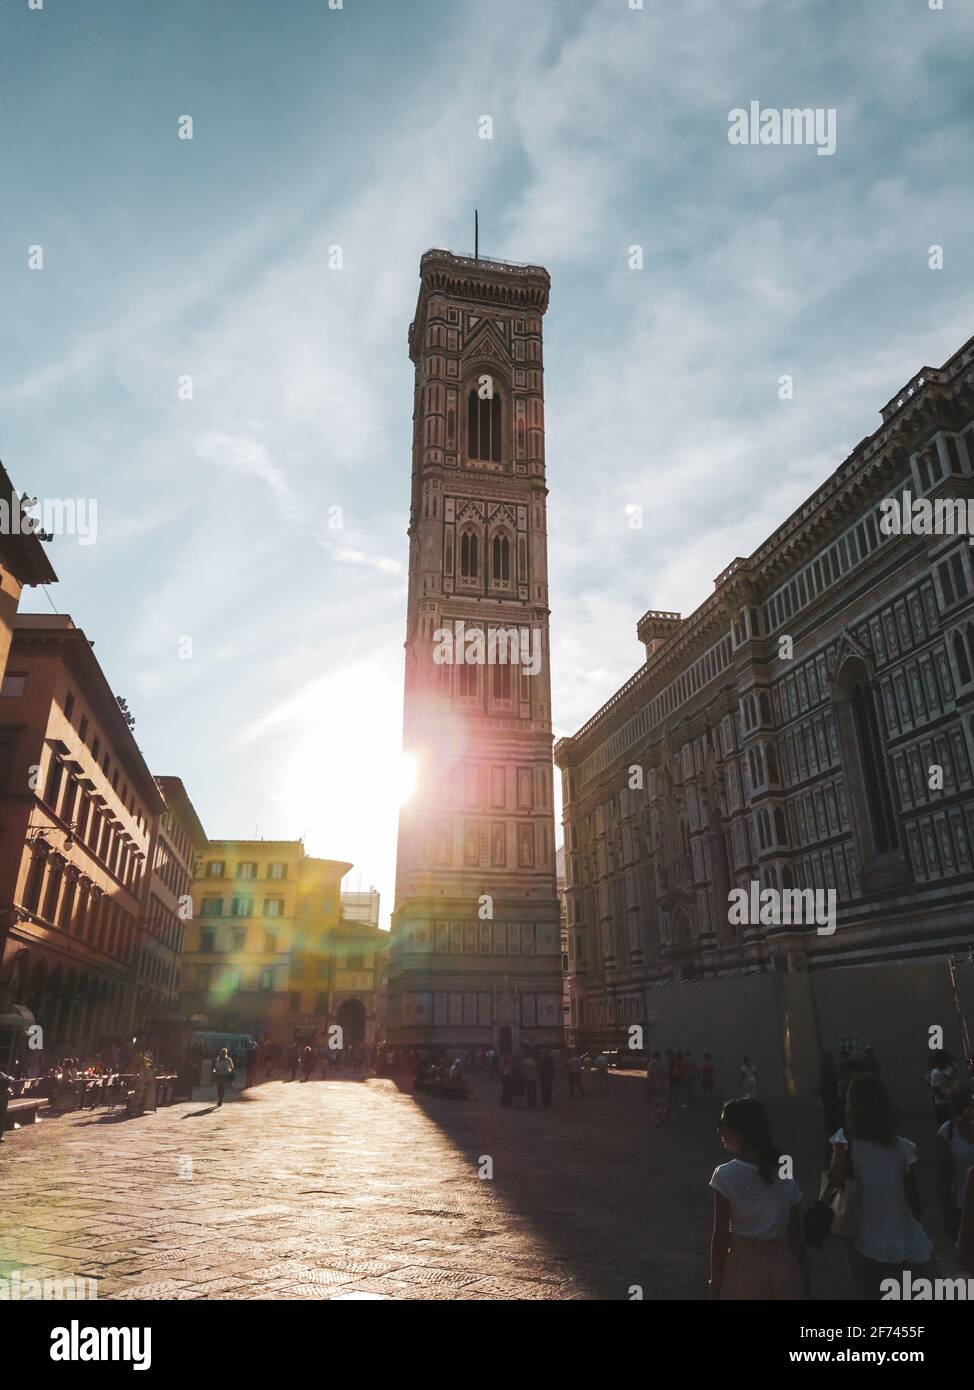 Firenze, Italia - 12 agosto 2019: Il campanile di Giotto e la Cattedrale di Santa Maria del Fiore si affacciano sulla strada con il sole luminoso. Facciata in marmo colorato con co Foto Stock